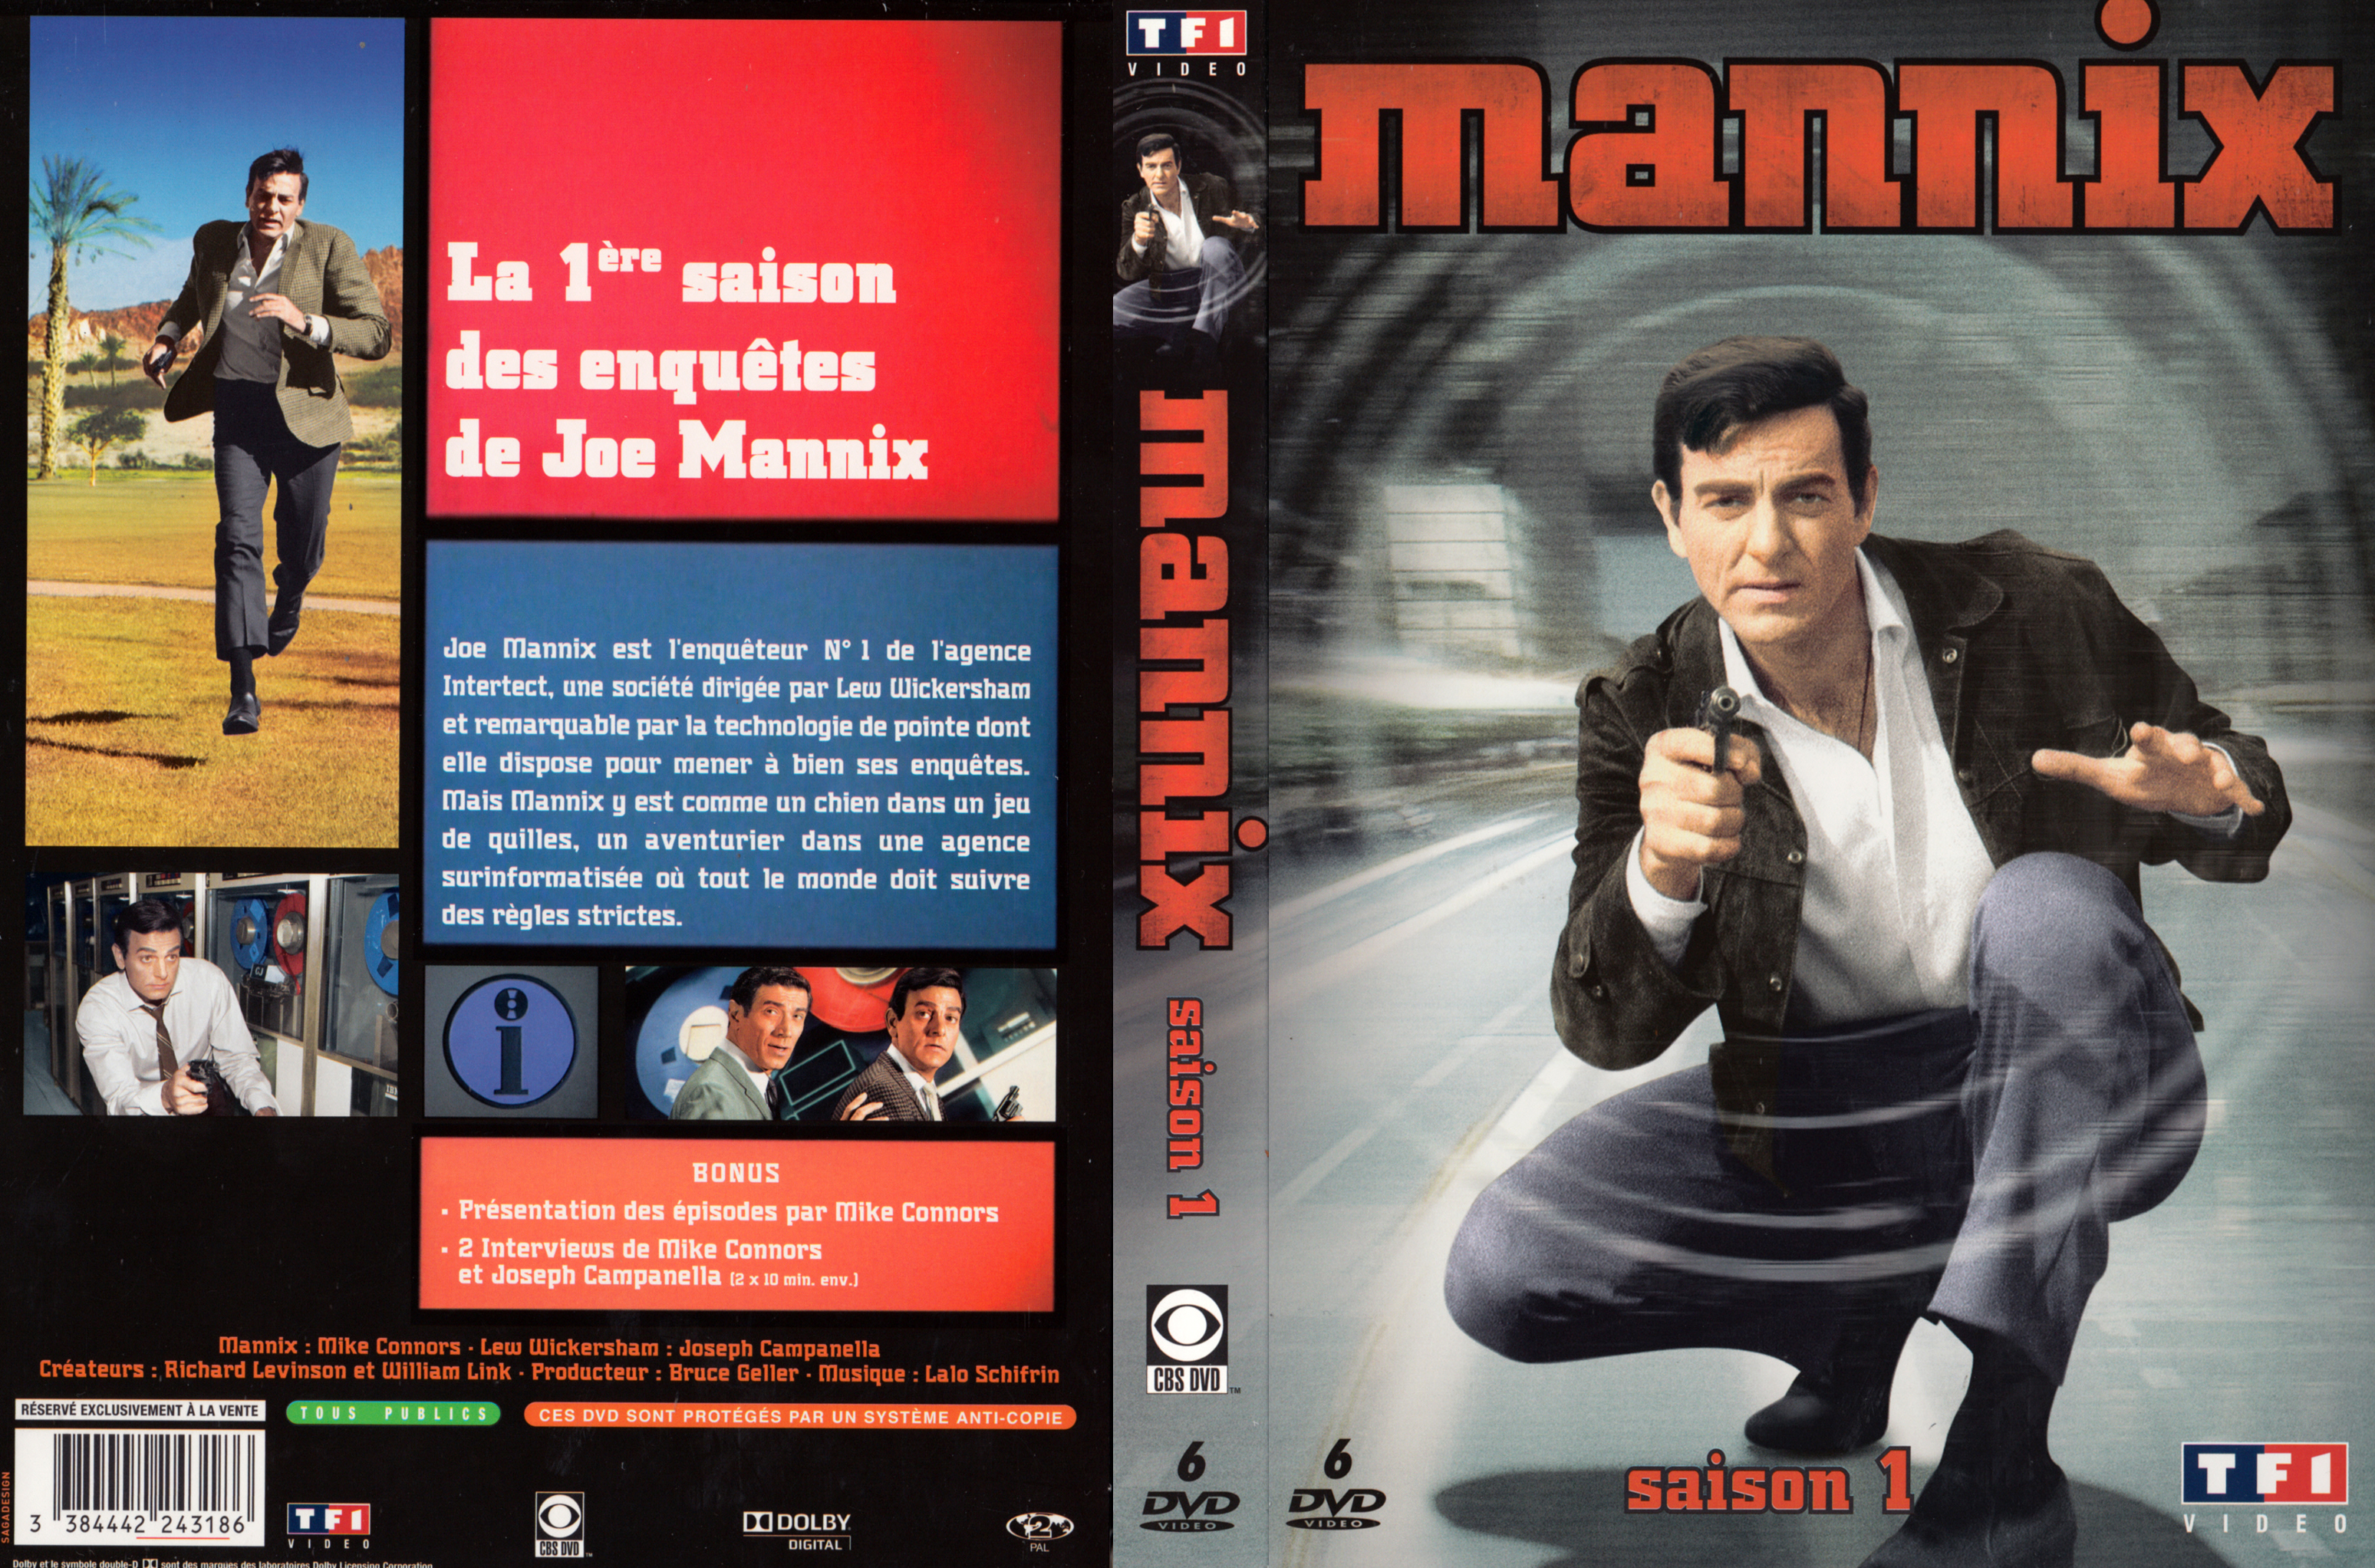 Jaquette DVD Mannix Saison 1 COFFRET